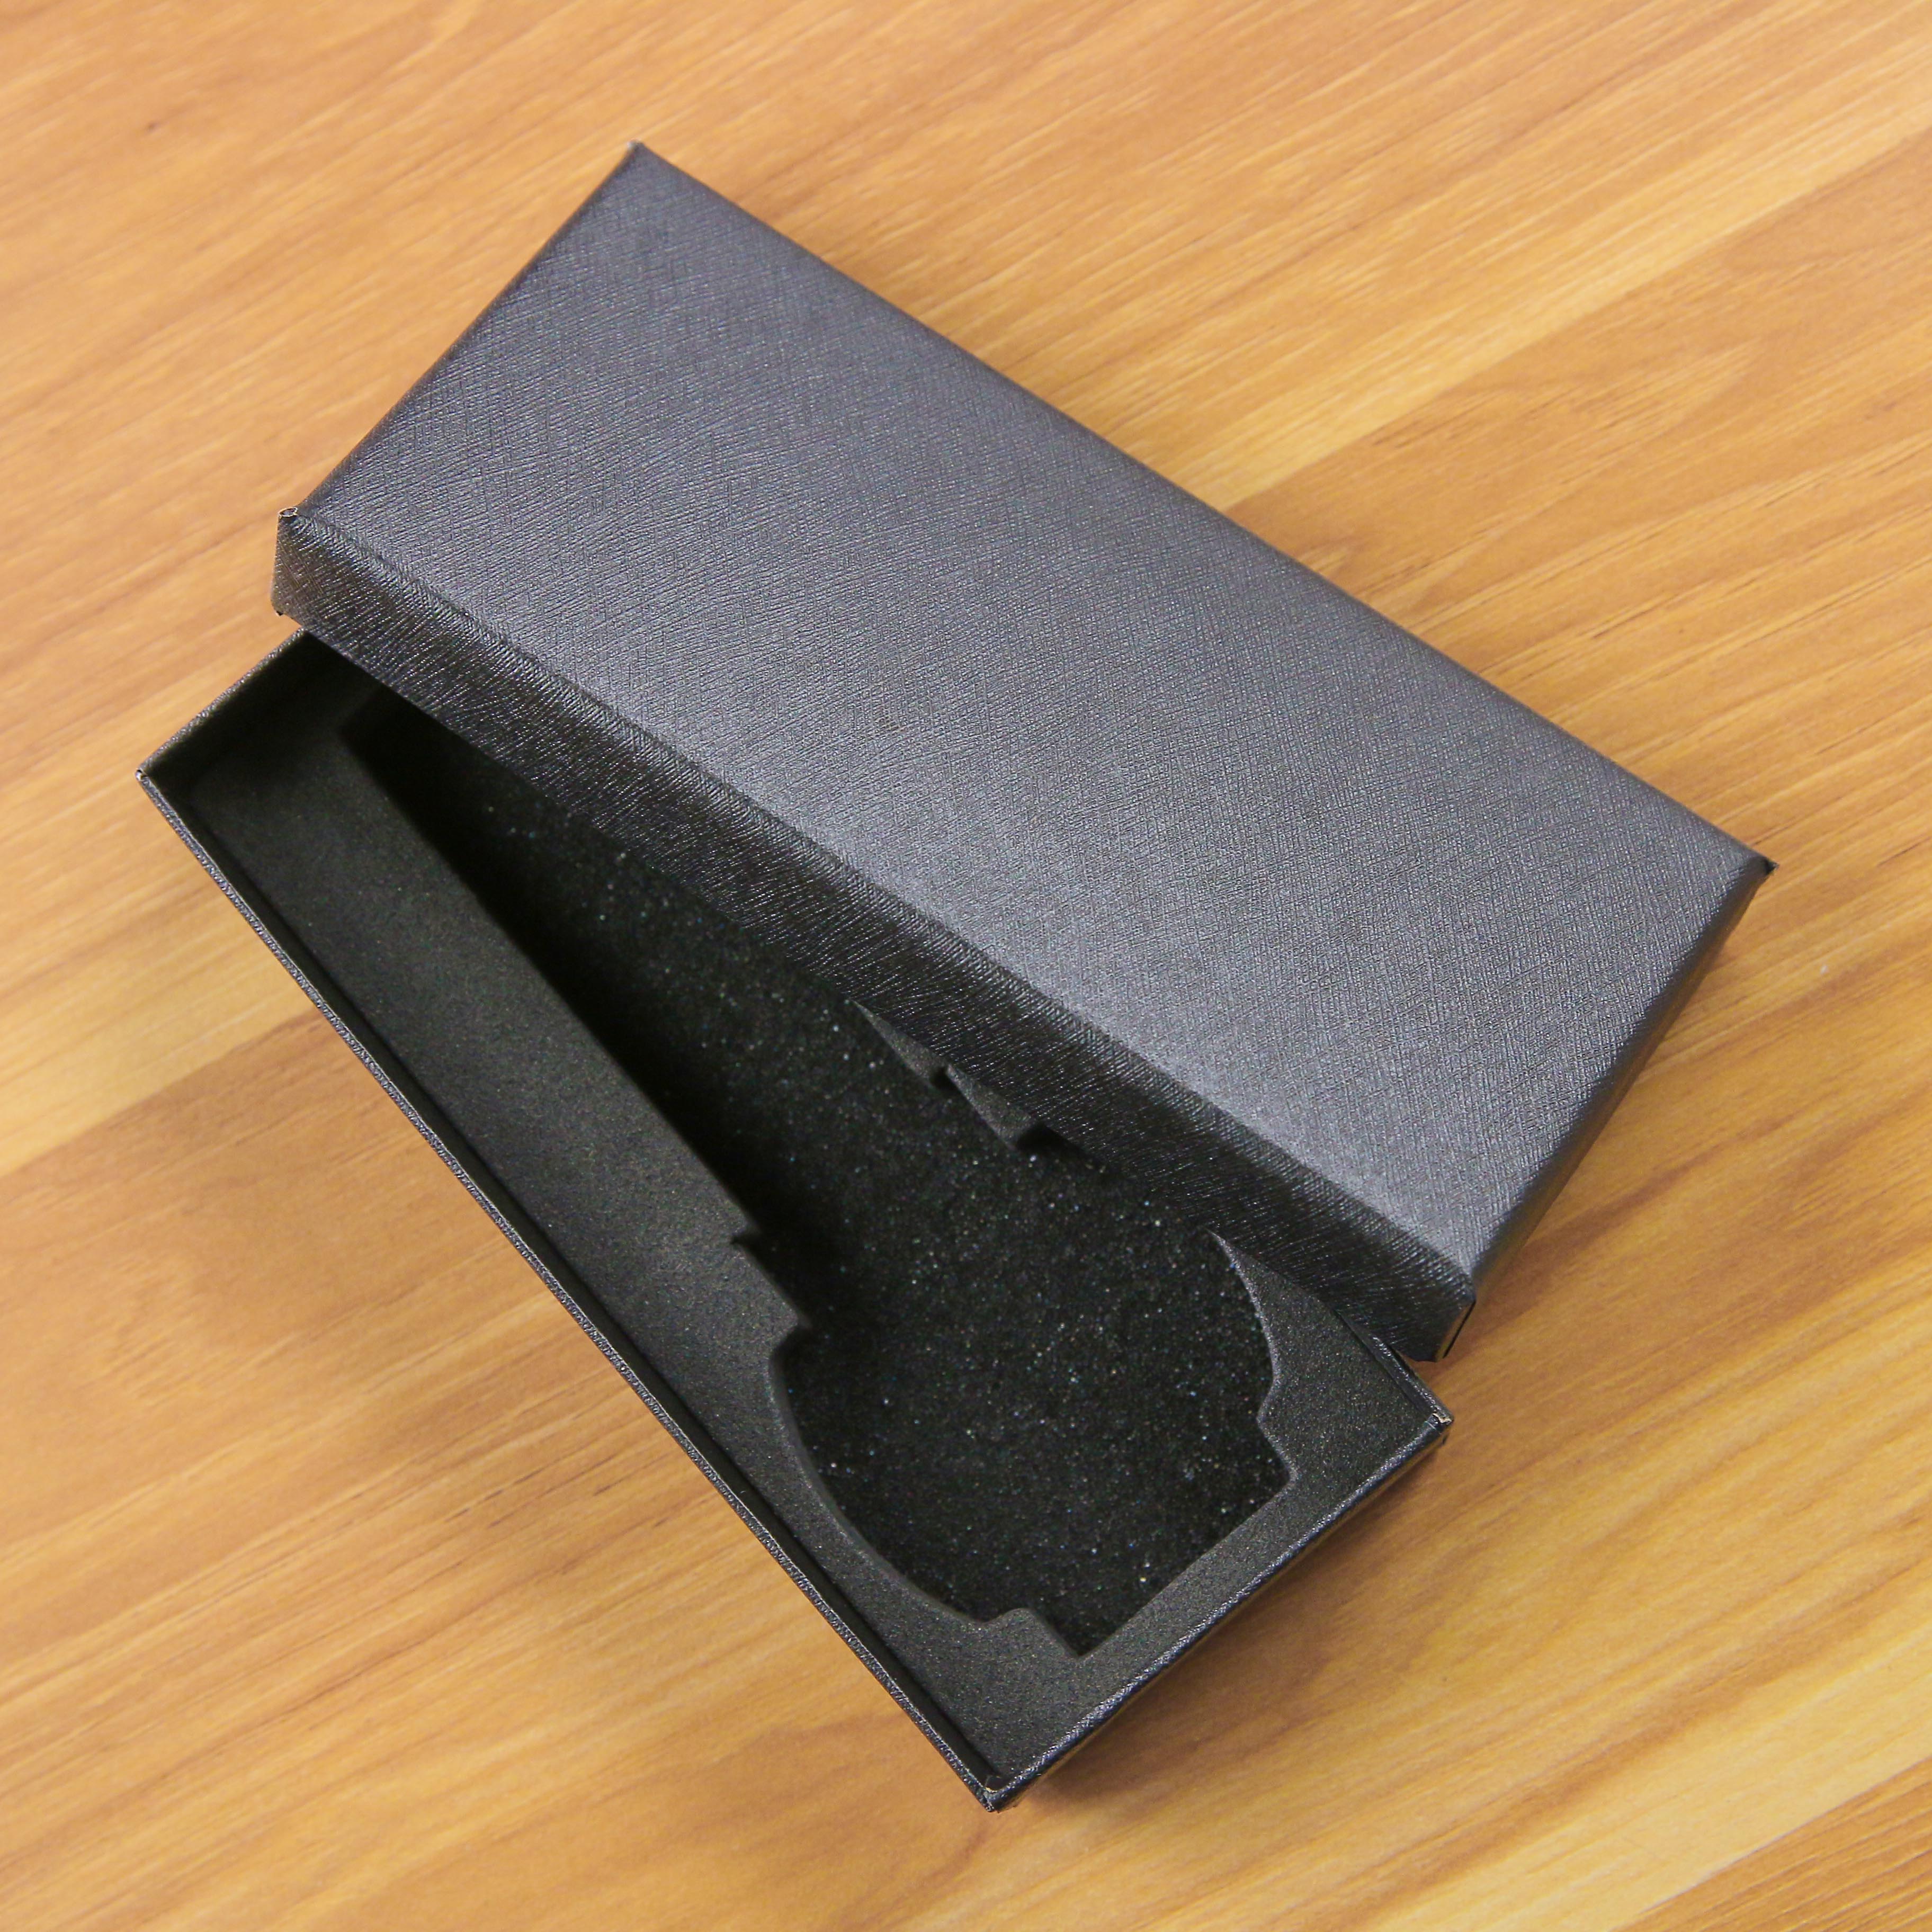 Hộp đựng đồng hồ đeo tay PAGINI - HOPDEN001 màu đen cao cấp